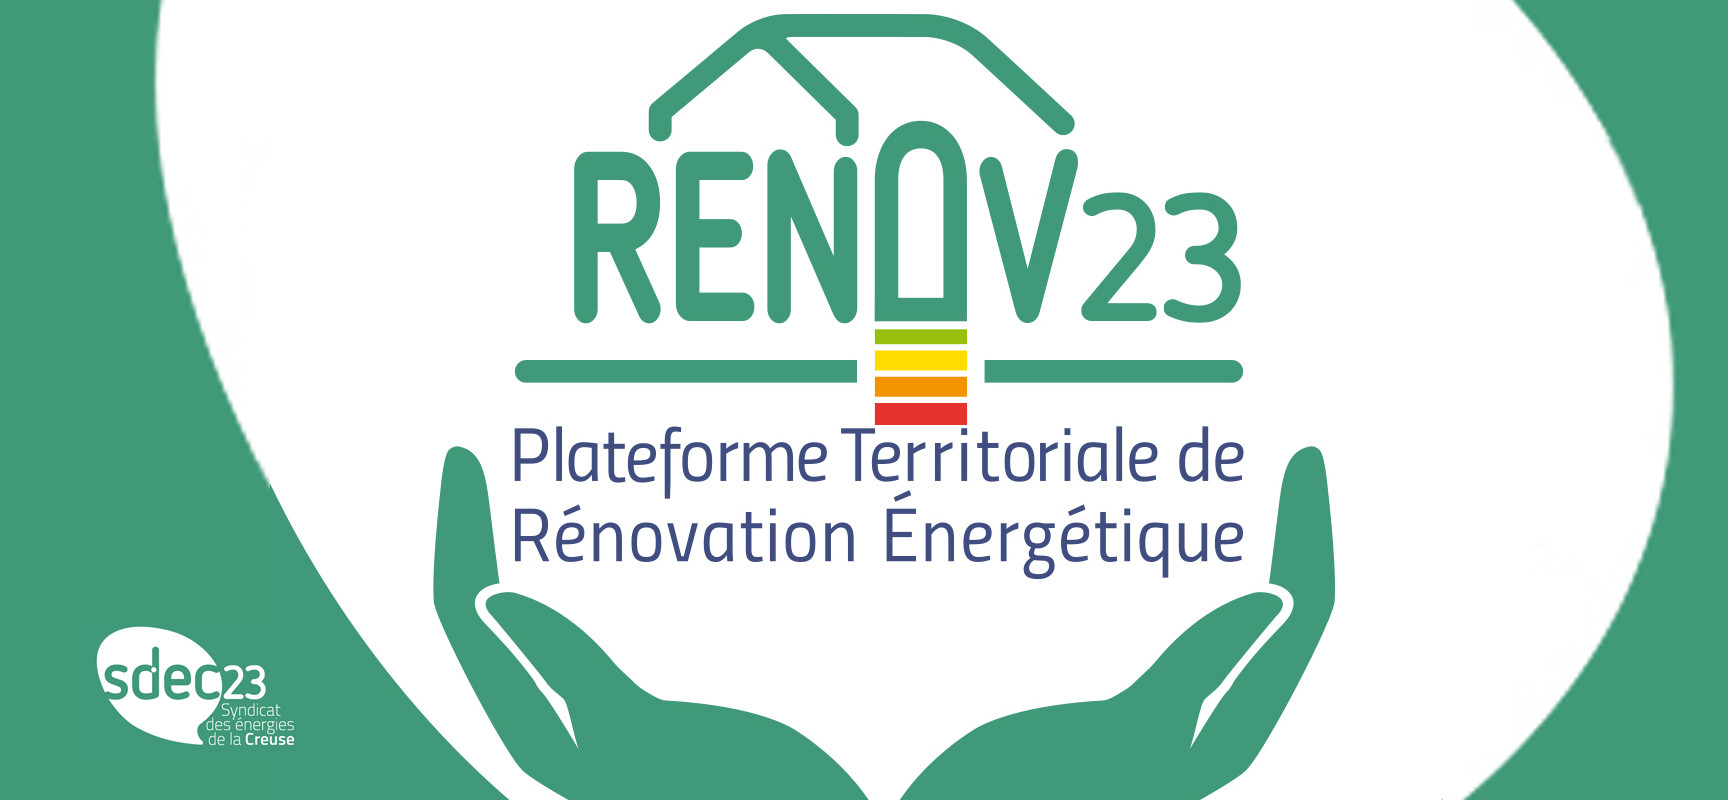 Rendez-vous Renov’23 pour vous aider à monter votre dossier de rénovation énergétique – Juin 2023